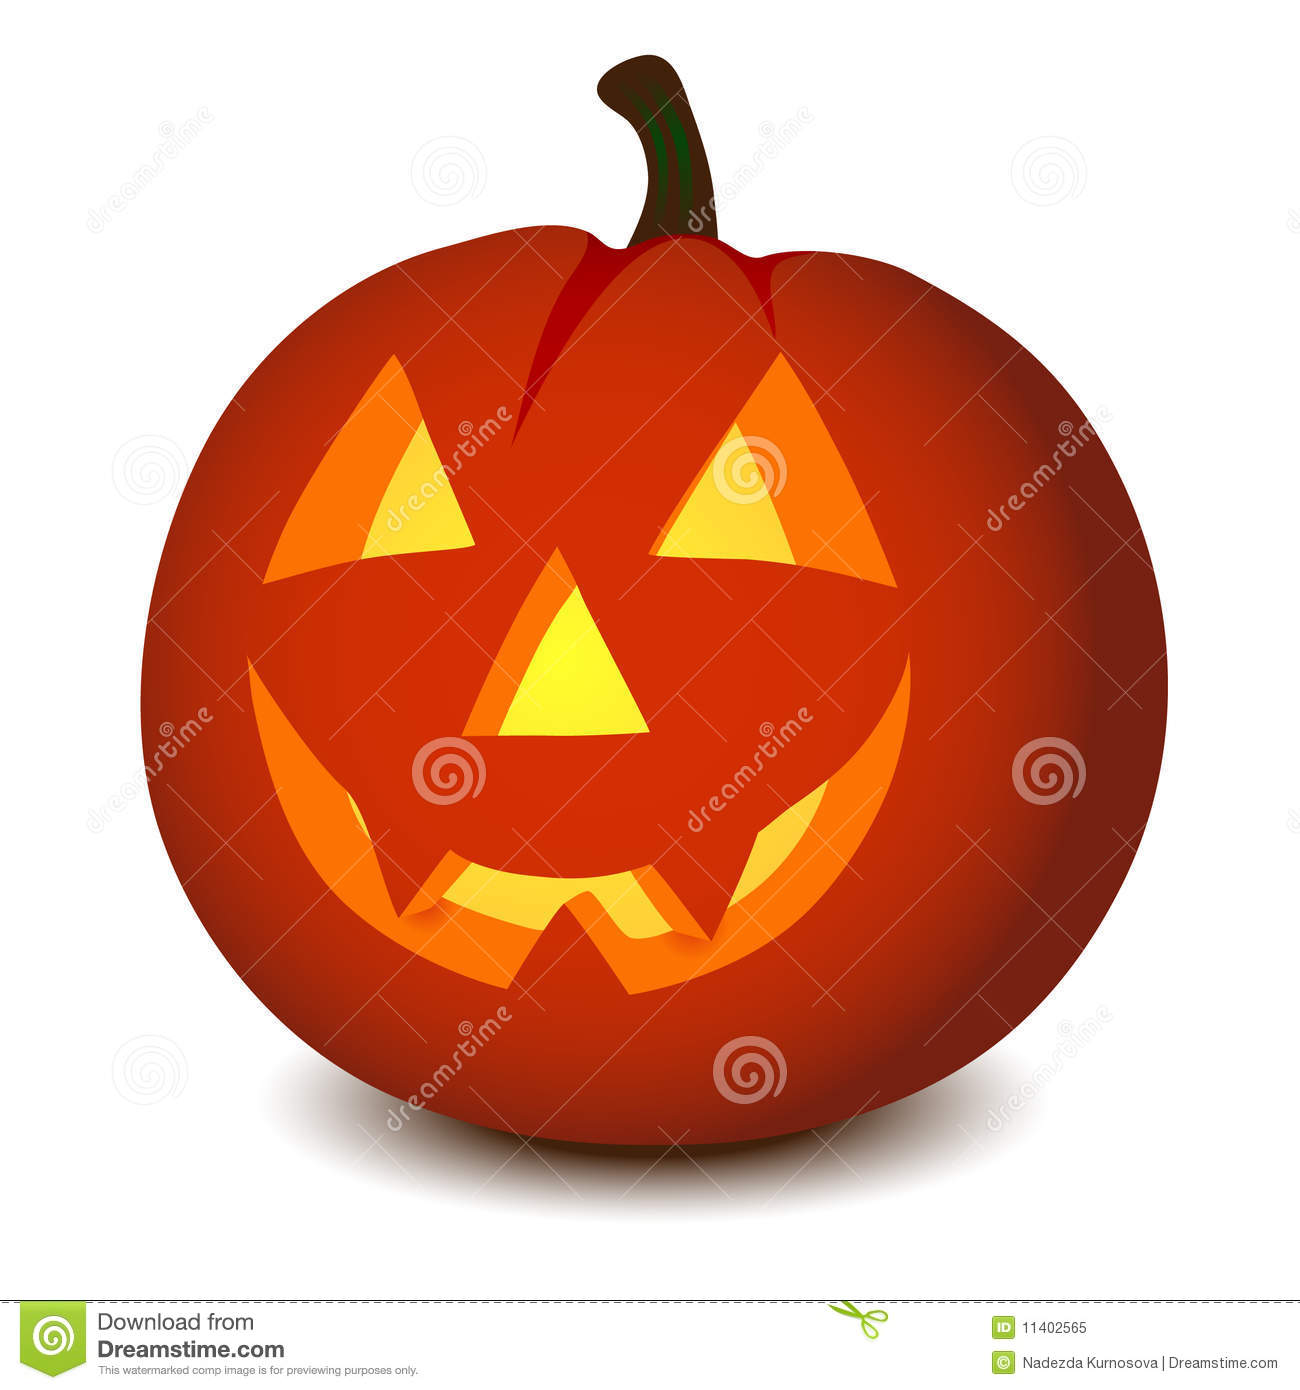 Free Halloween Vector Pumpkins